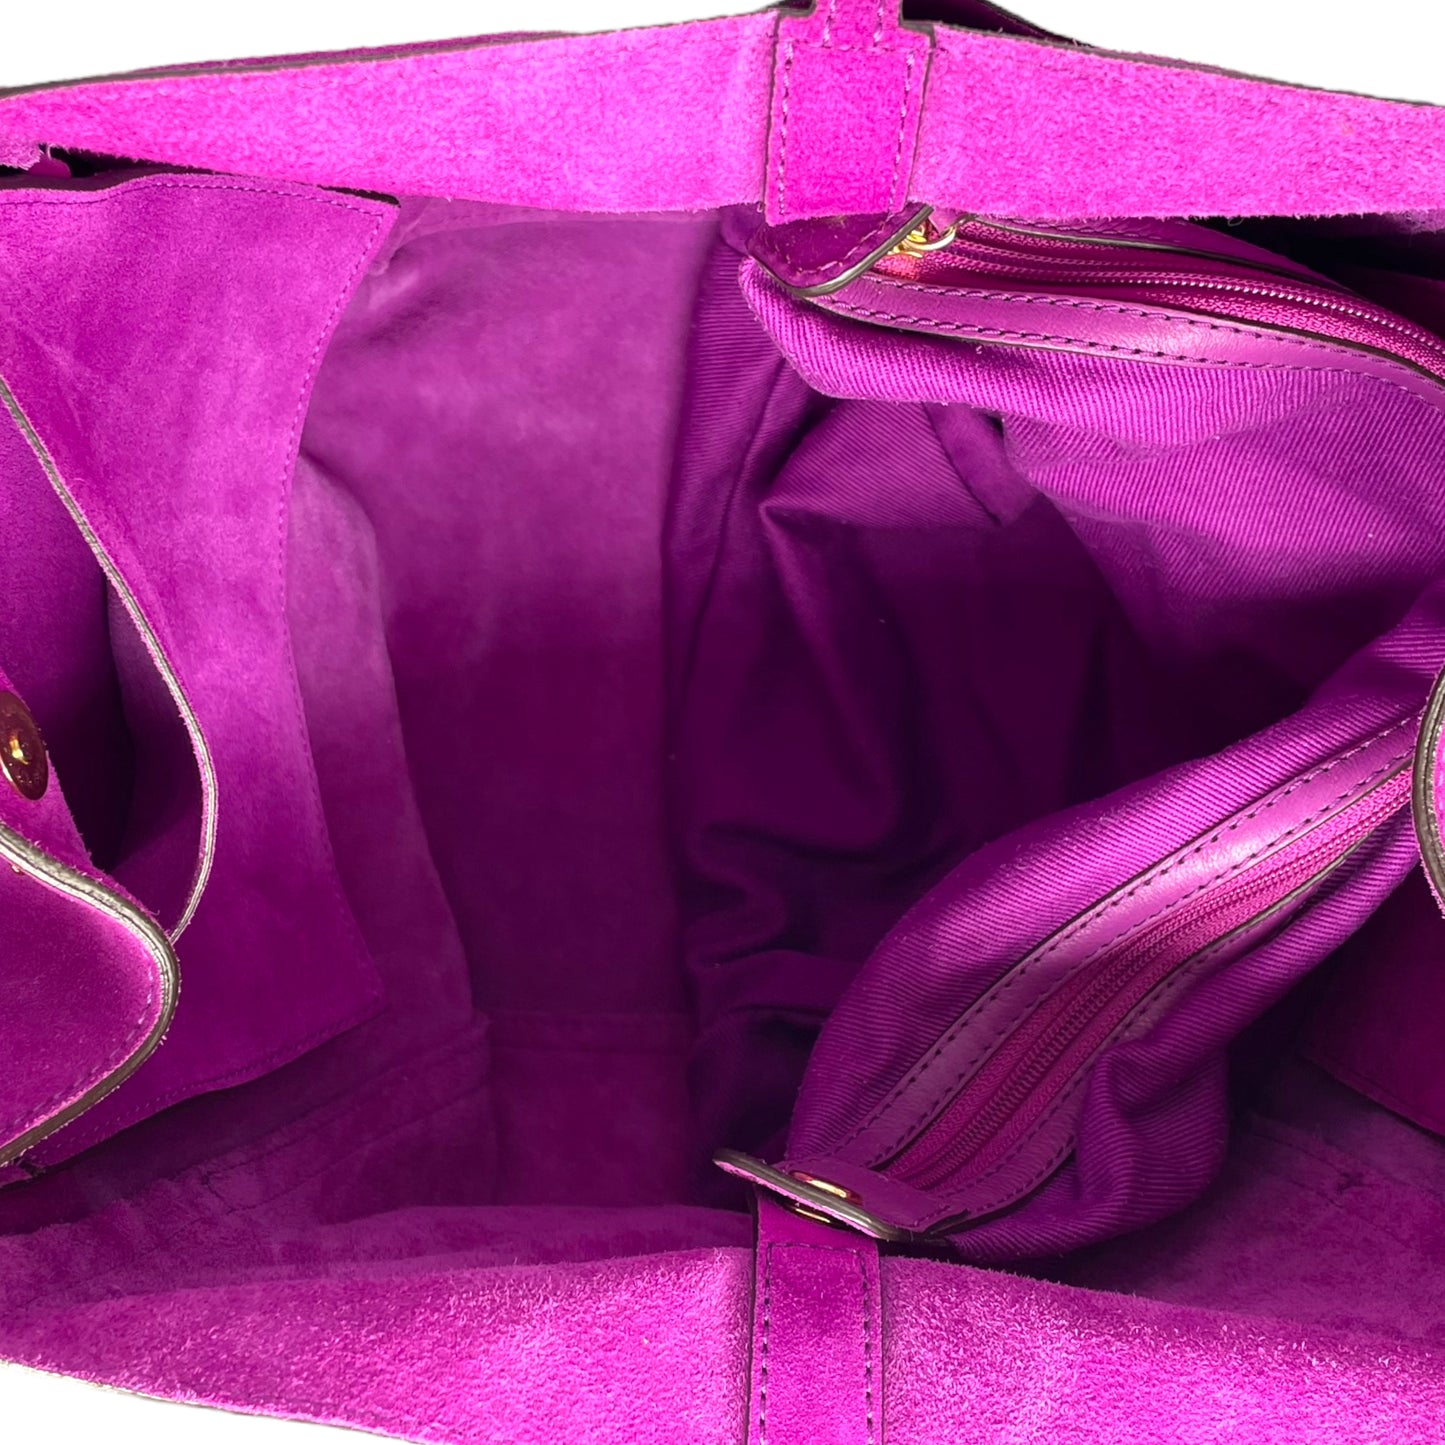 Michael Kors Ashbury Large Suede Shoulder Bag